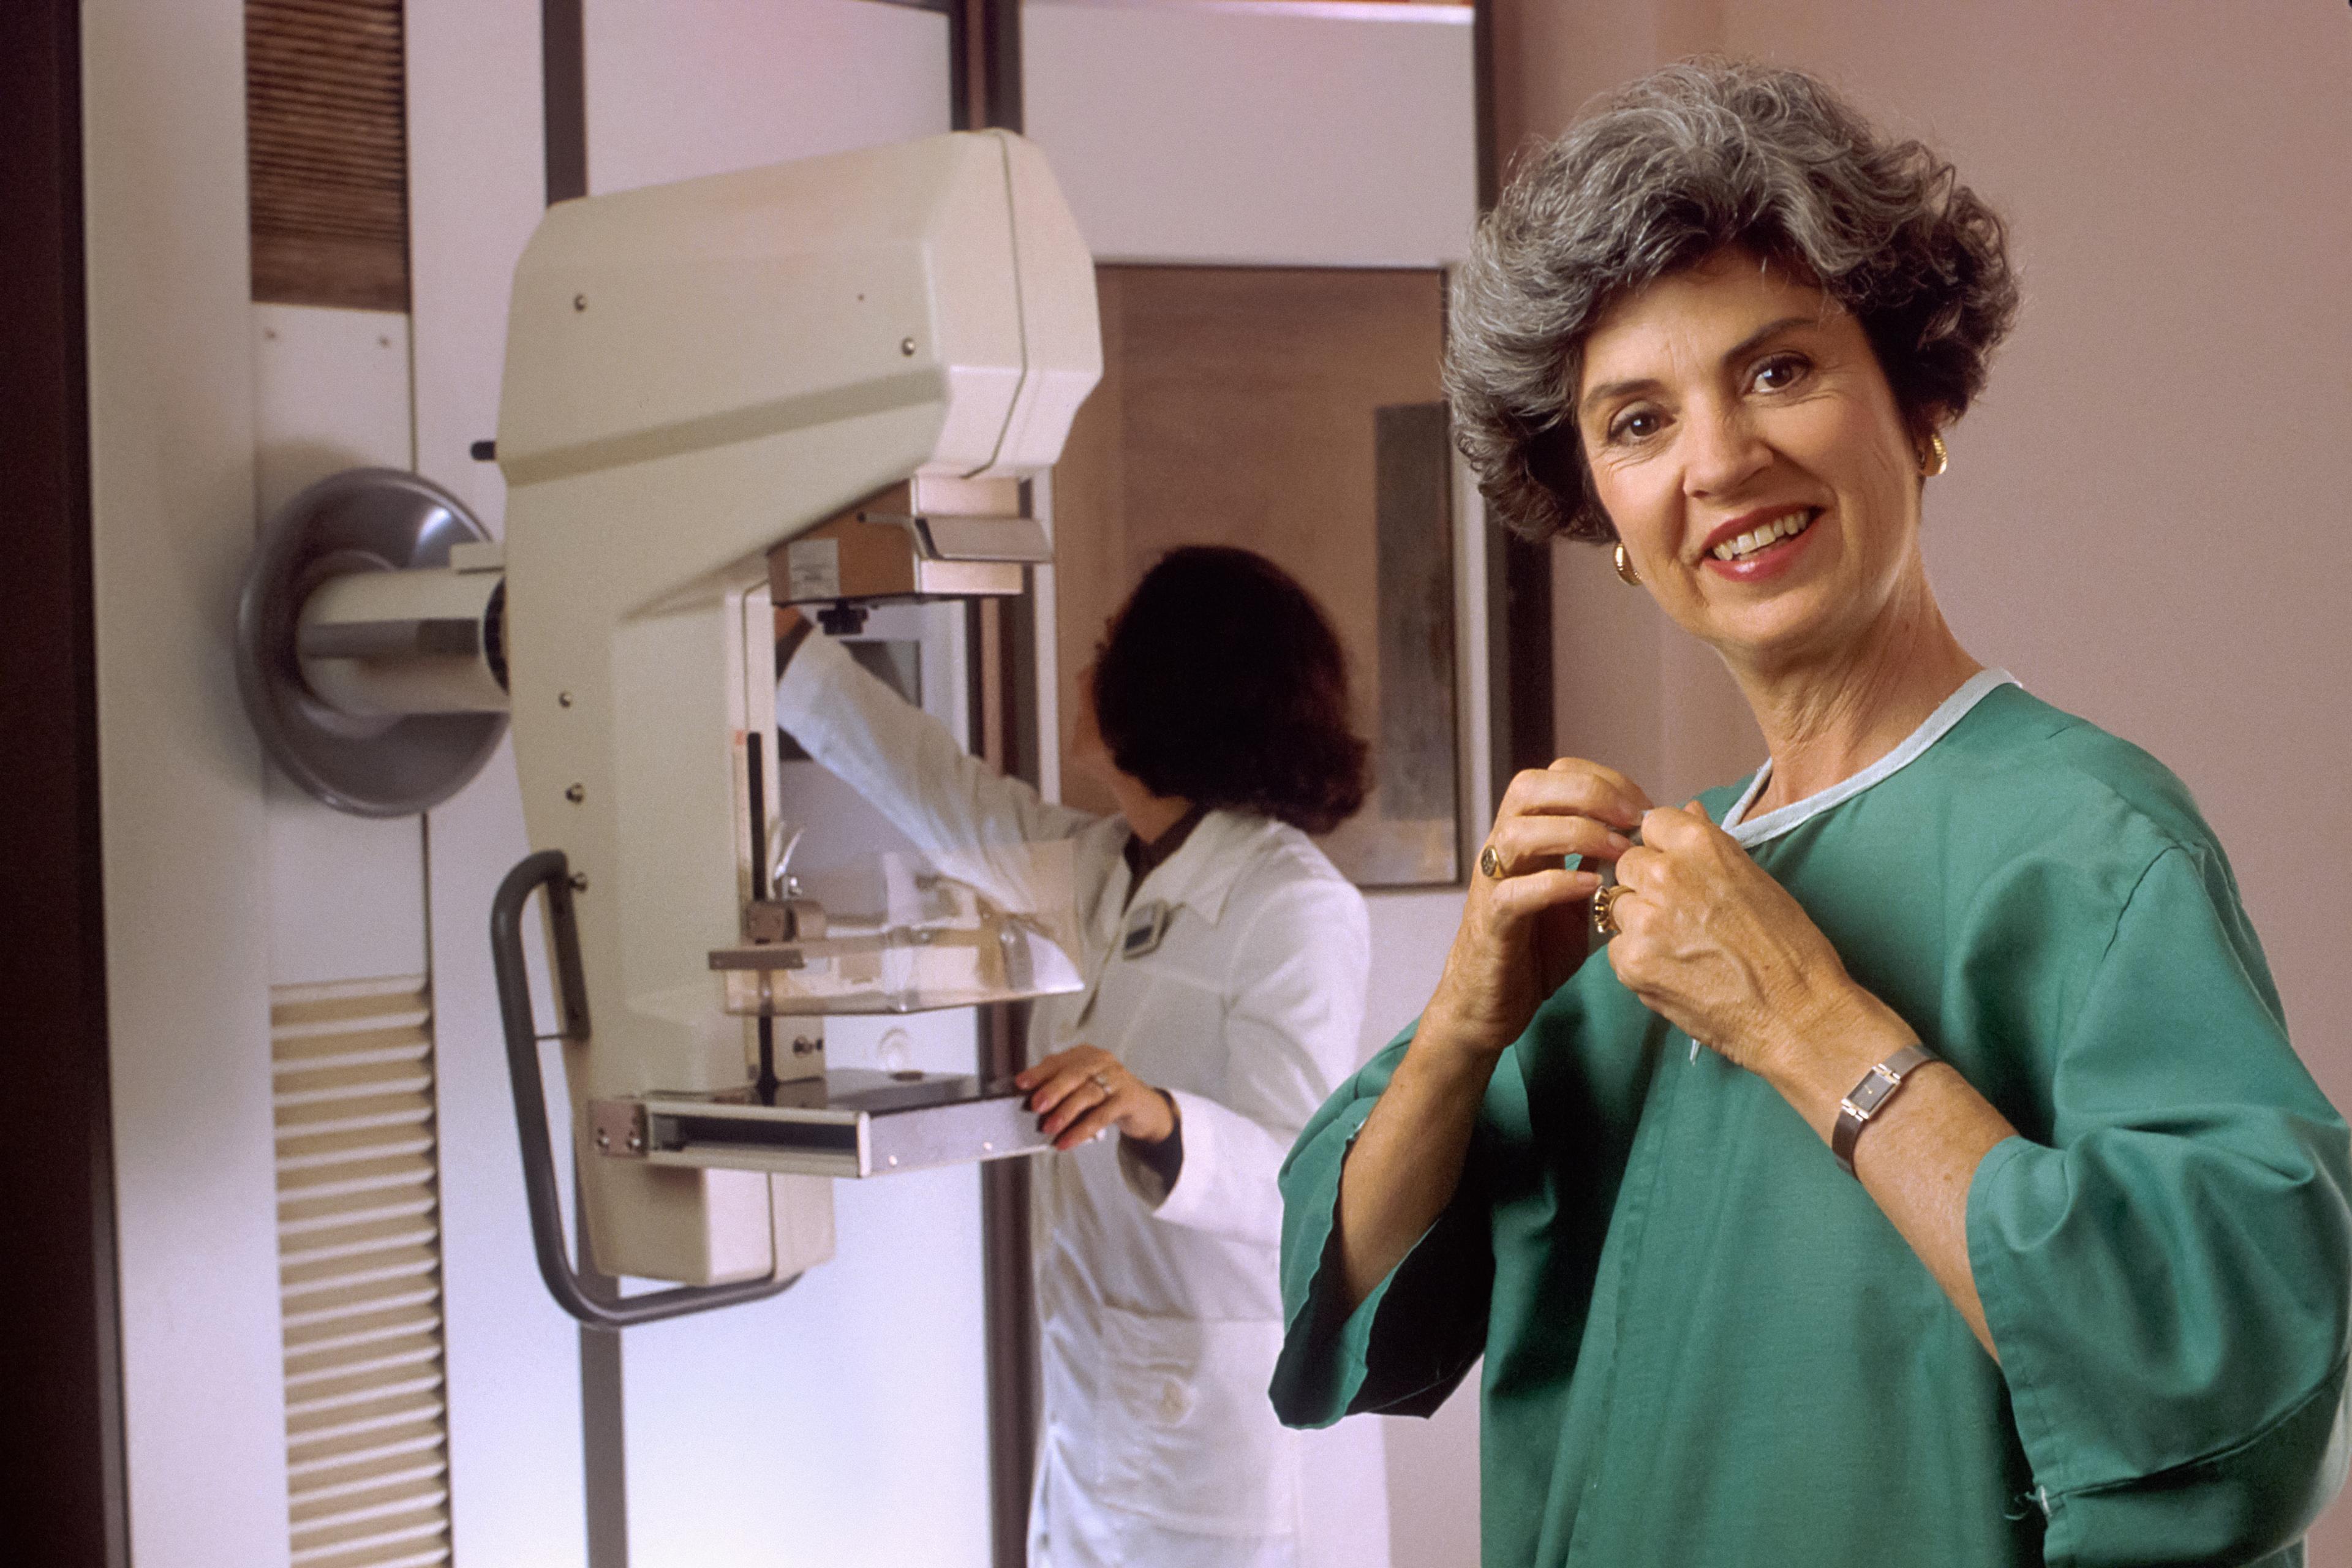 Mammografia - kiedy wykonuje się to badanie i jak się przygotować? Mammografia – jak wygląda badanie? Przygotowanie do mammografii. Rak piersi. Samobadanie piersi. W jakim wieku należy się badać i wykonać pierwsze badanie? Jak się przygotować do badania? 